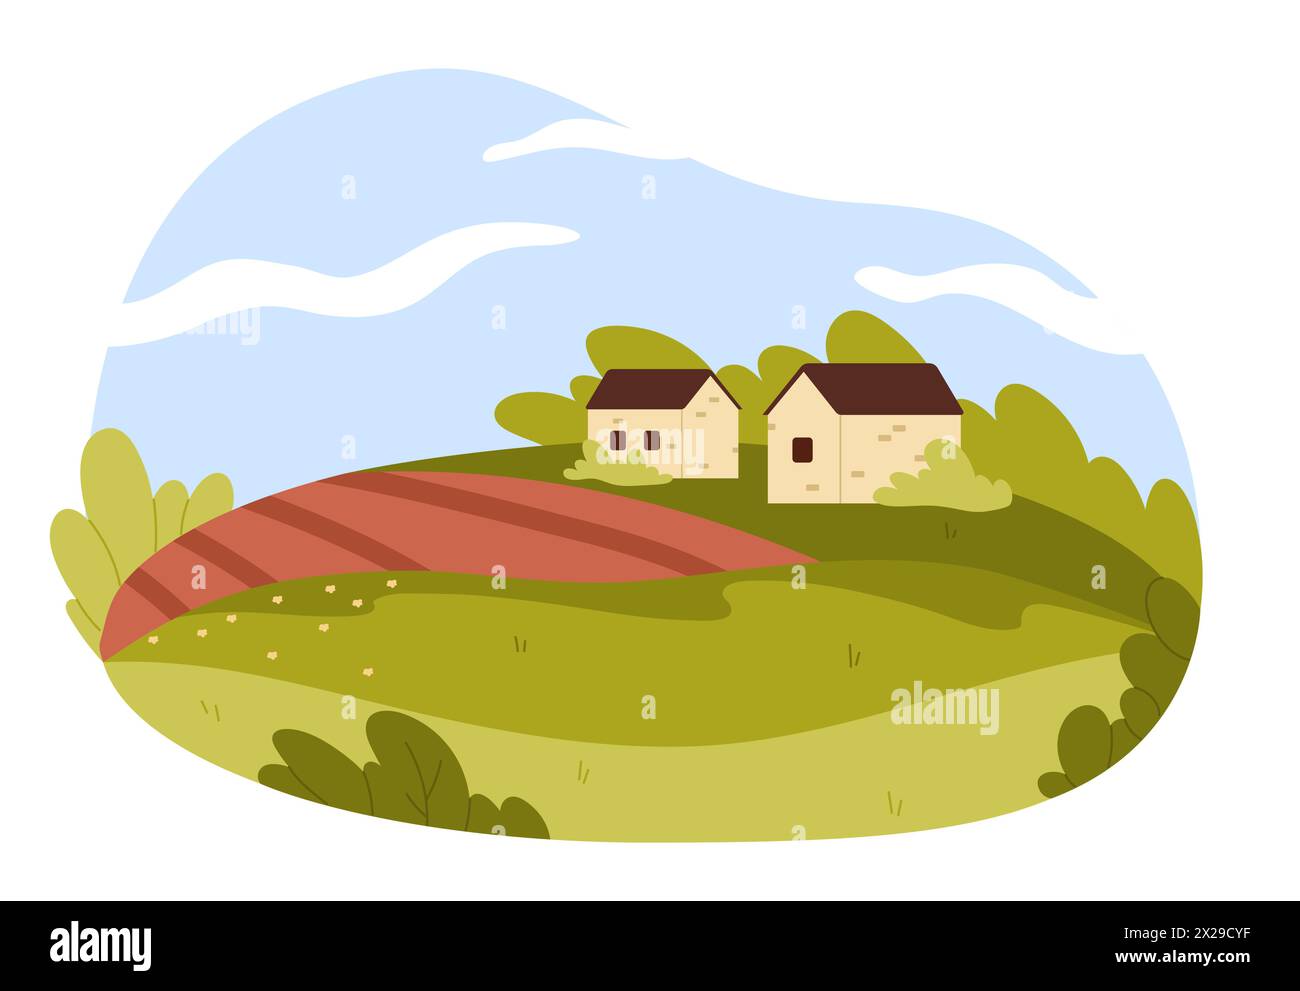 Eine bezaubernde Szene mit zwei malerischen Hütten, eingebettet zwischen grünen sanften Hügeln, roten Feldern und weitläufigem blauen Himmel Stock Vektor